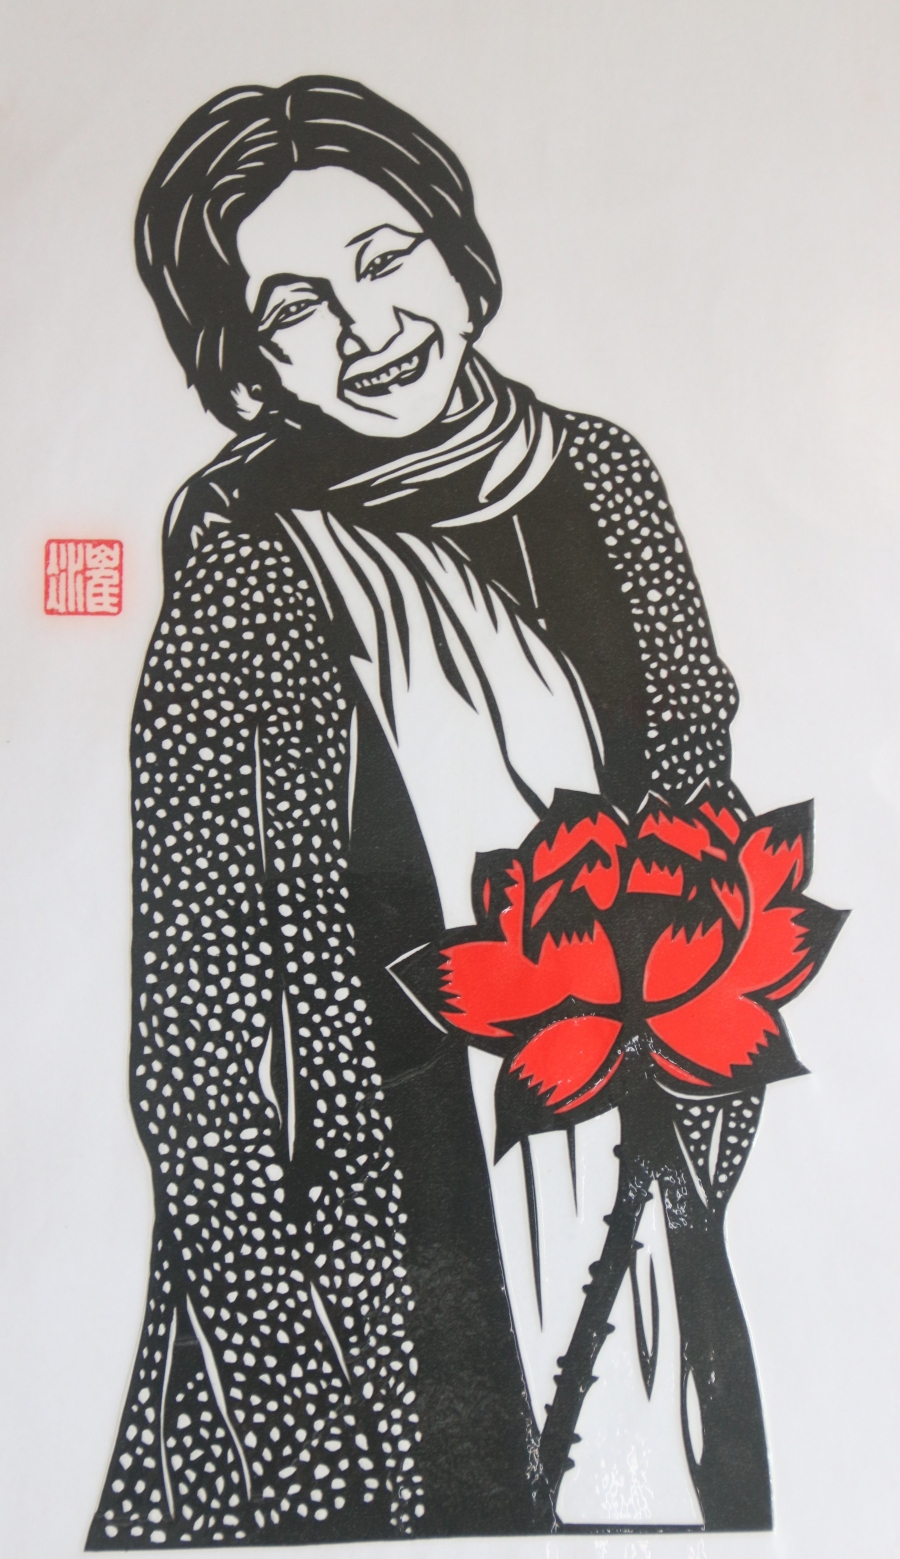 郑佩佩是崔冰年轻时候的偶像，也是佛光山檀讲师，她曾想剪肖像与她结缘，可是自认剪纸功夫不到家，所以不敢赠送。此肖像放了套色，红包莲花象征名气，莲花象征学佛。